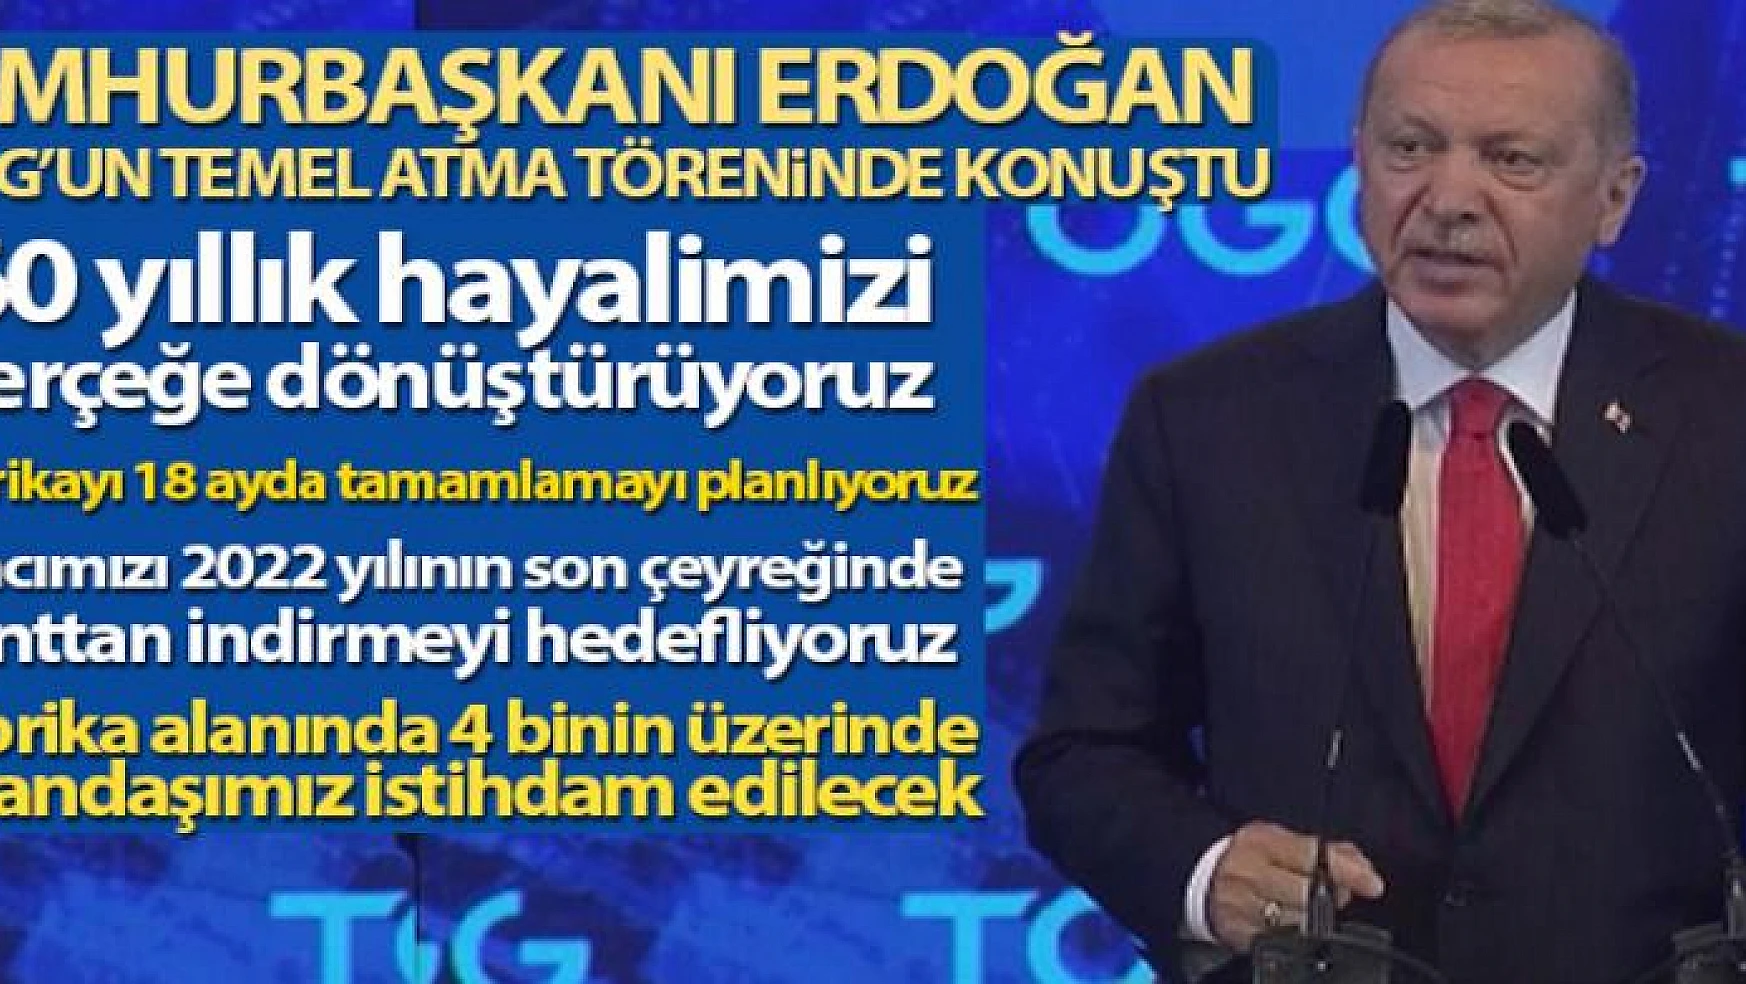 Türkiye için tarihi gün, TOGG'un temeli Bursa'da atıldı